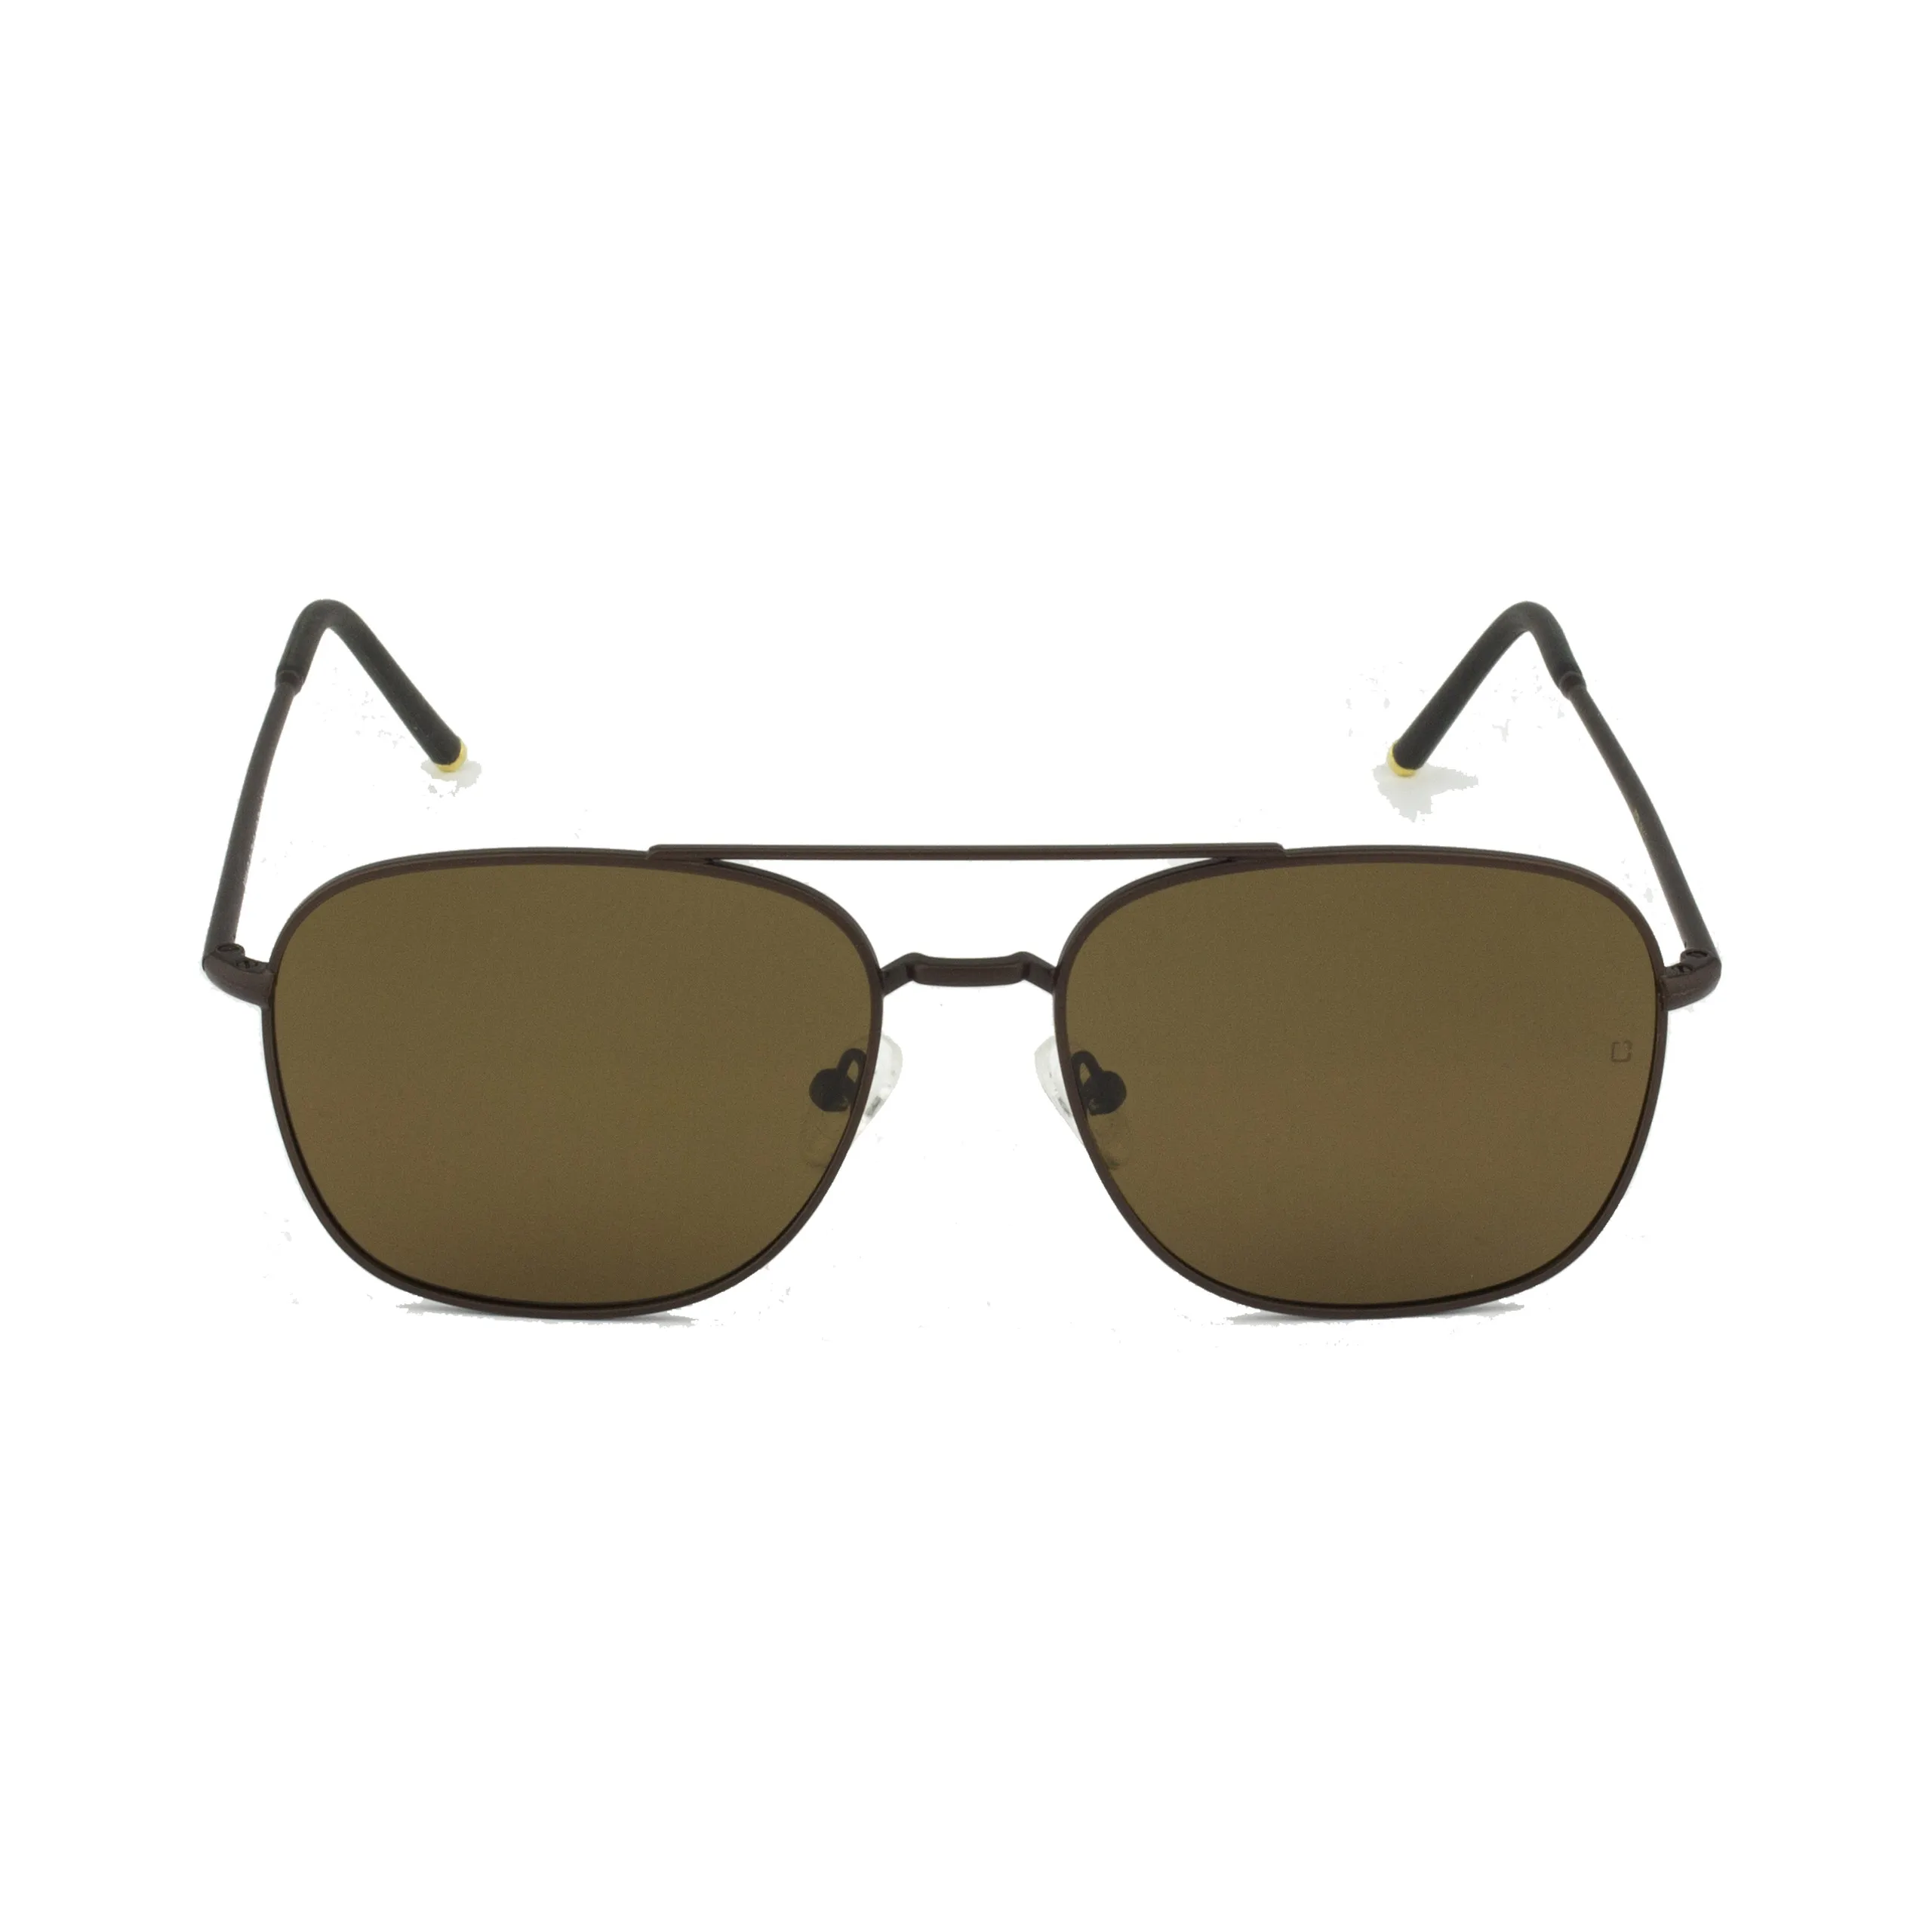 Zolo eyewear m1145 коричневые поляризованные солнцезащитные очки